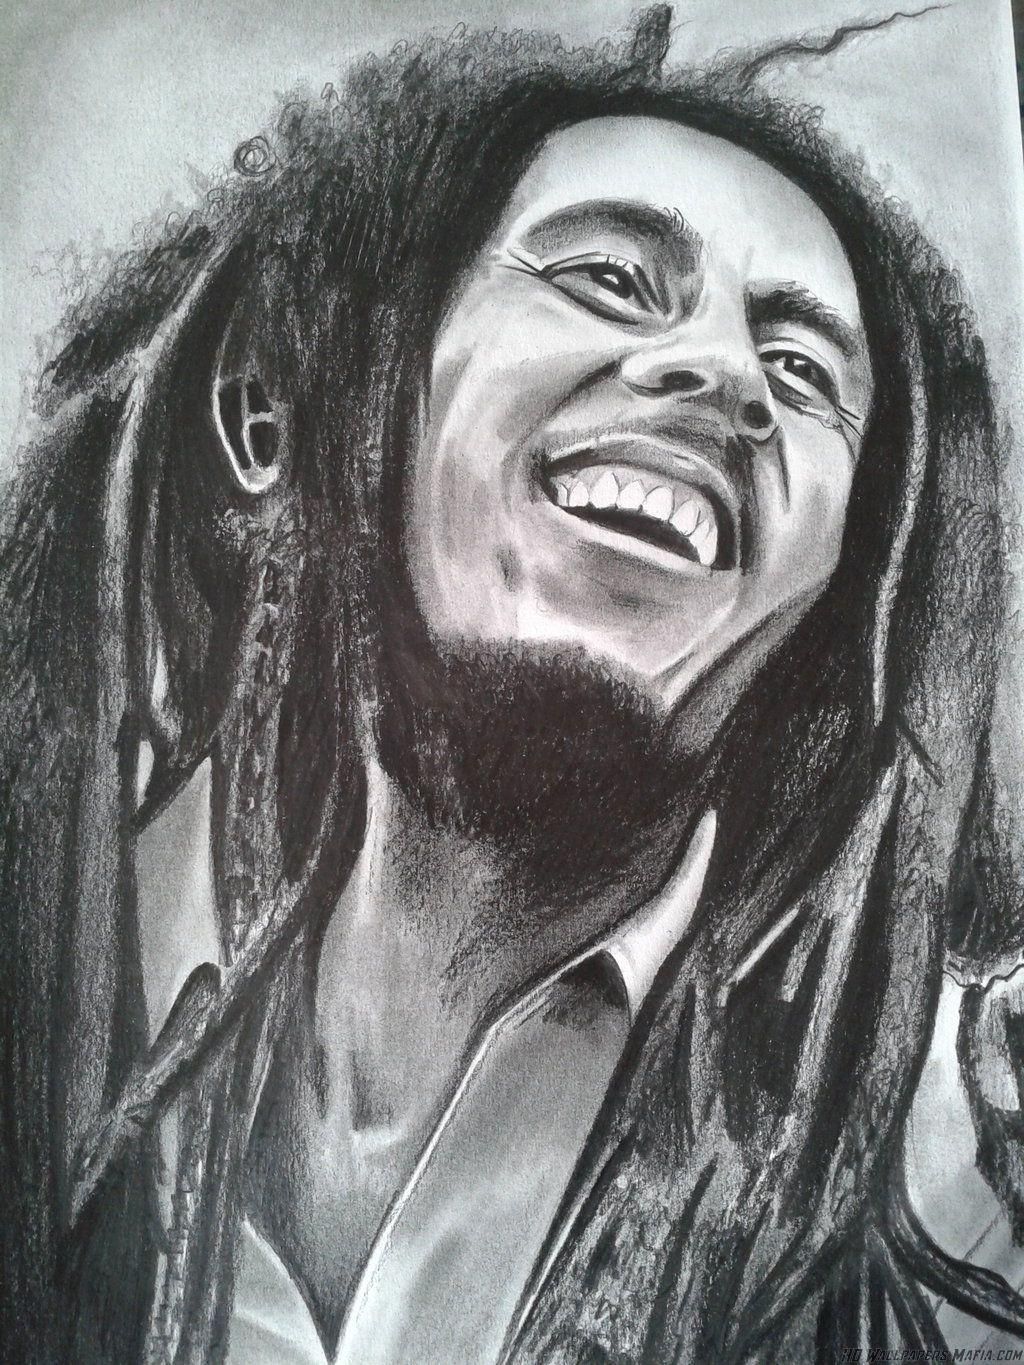 Bob Marley - 1024x1365 Wallpaper - teahub.io